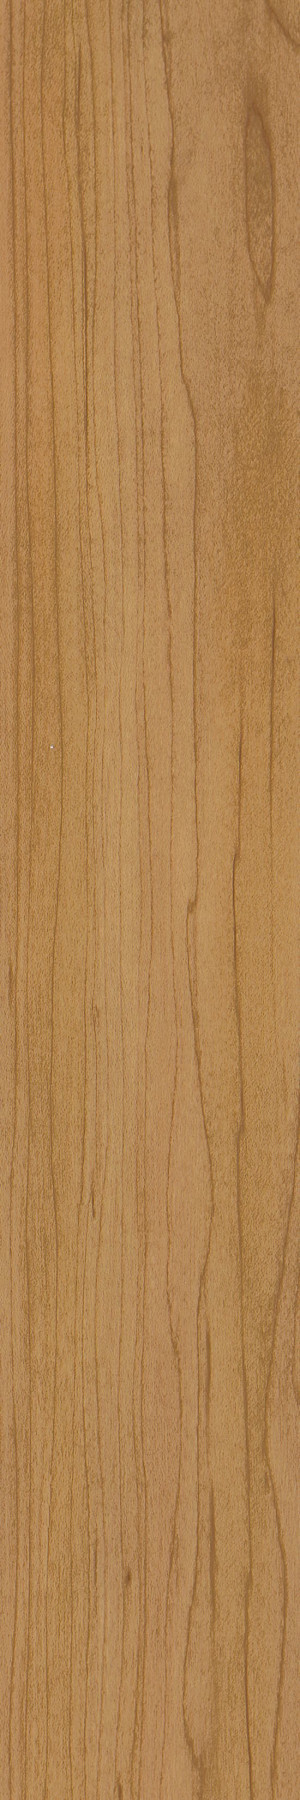 Shaw Uncommon Ground 6" LVT White Oak Glue down Premium (35.65 sq ft/ ctn)